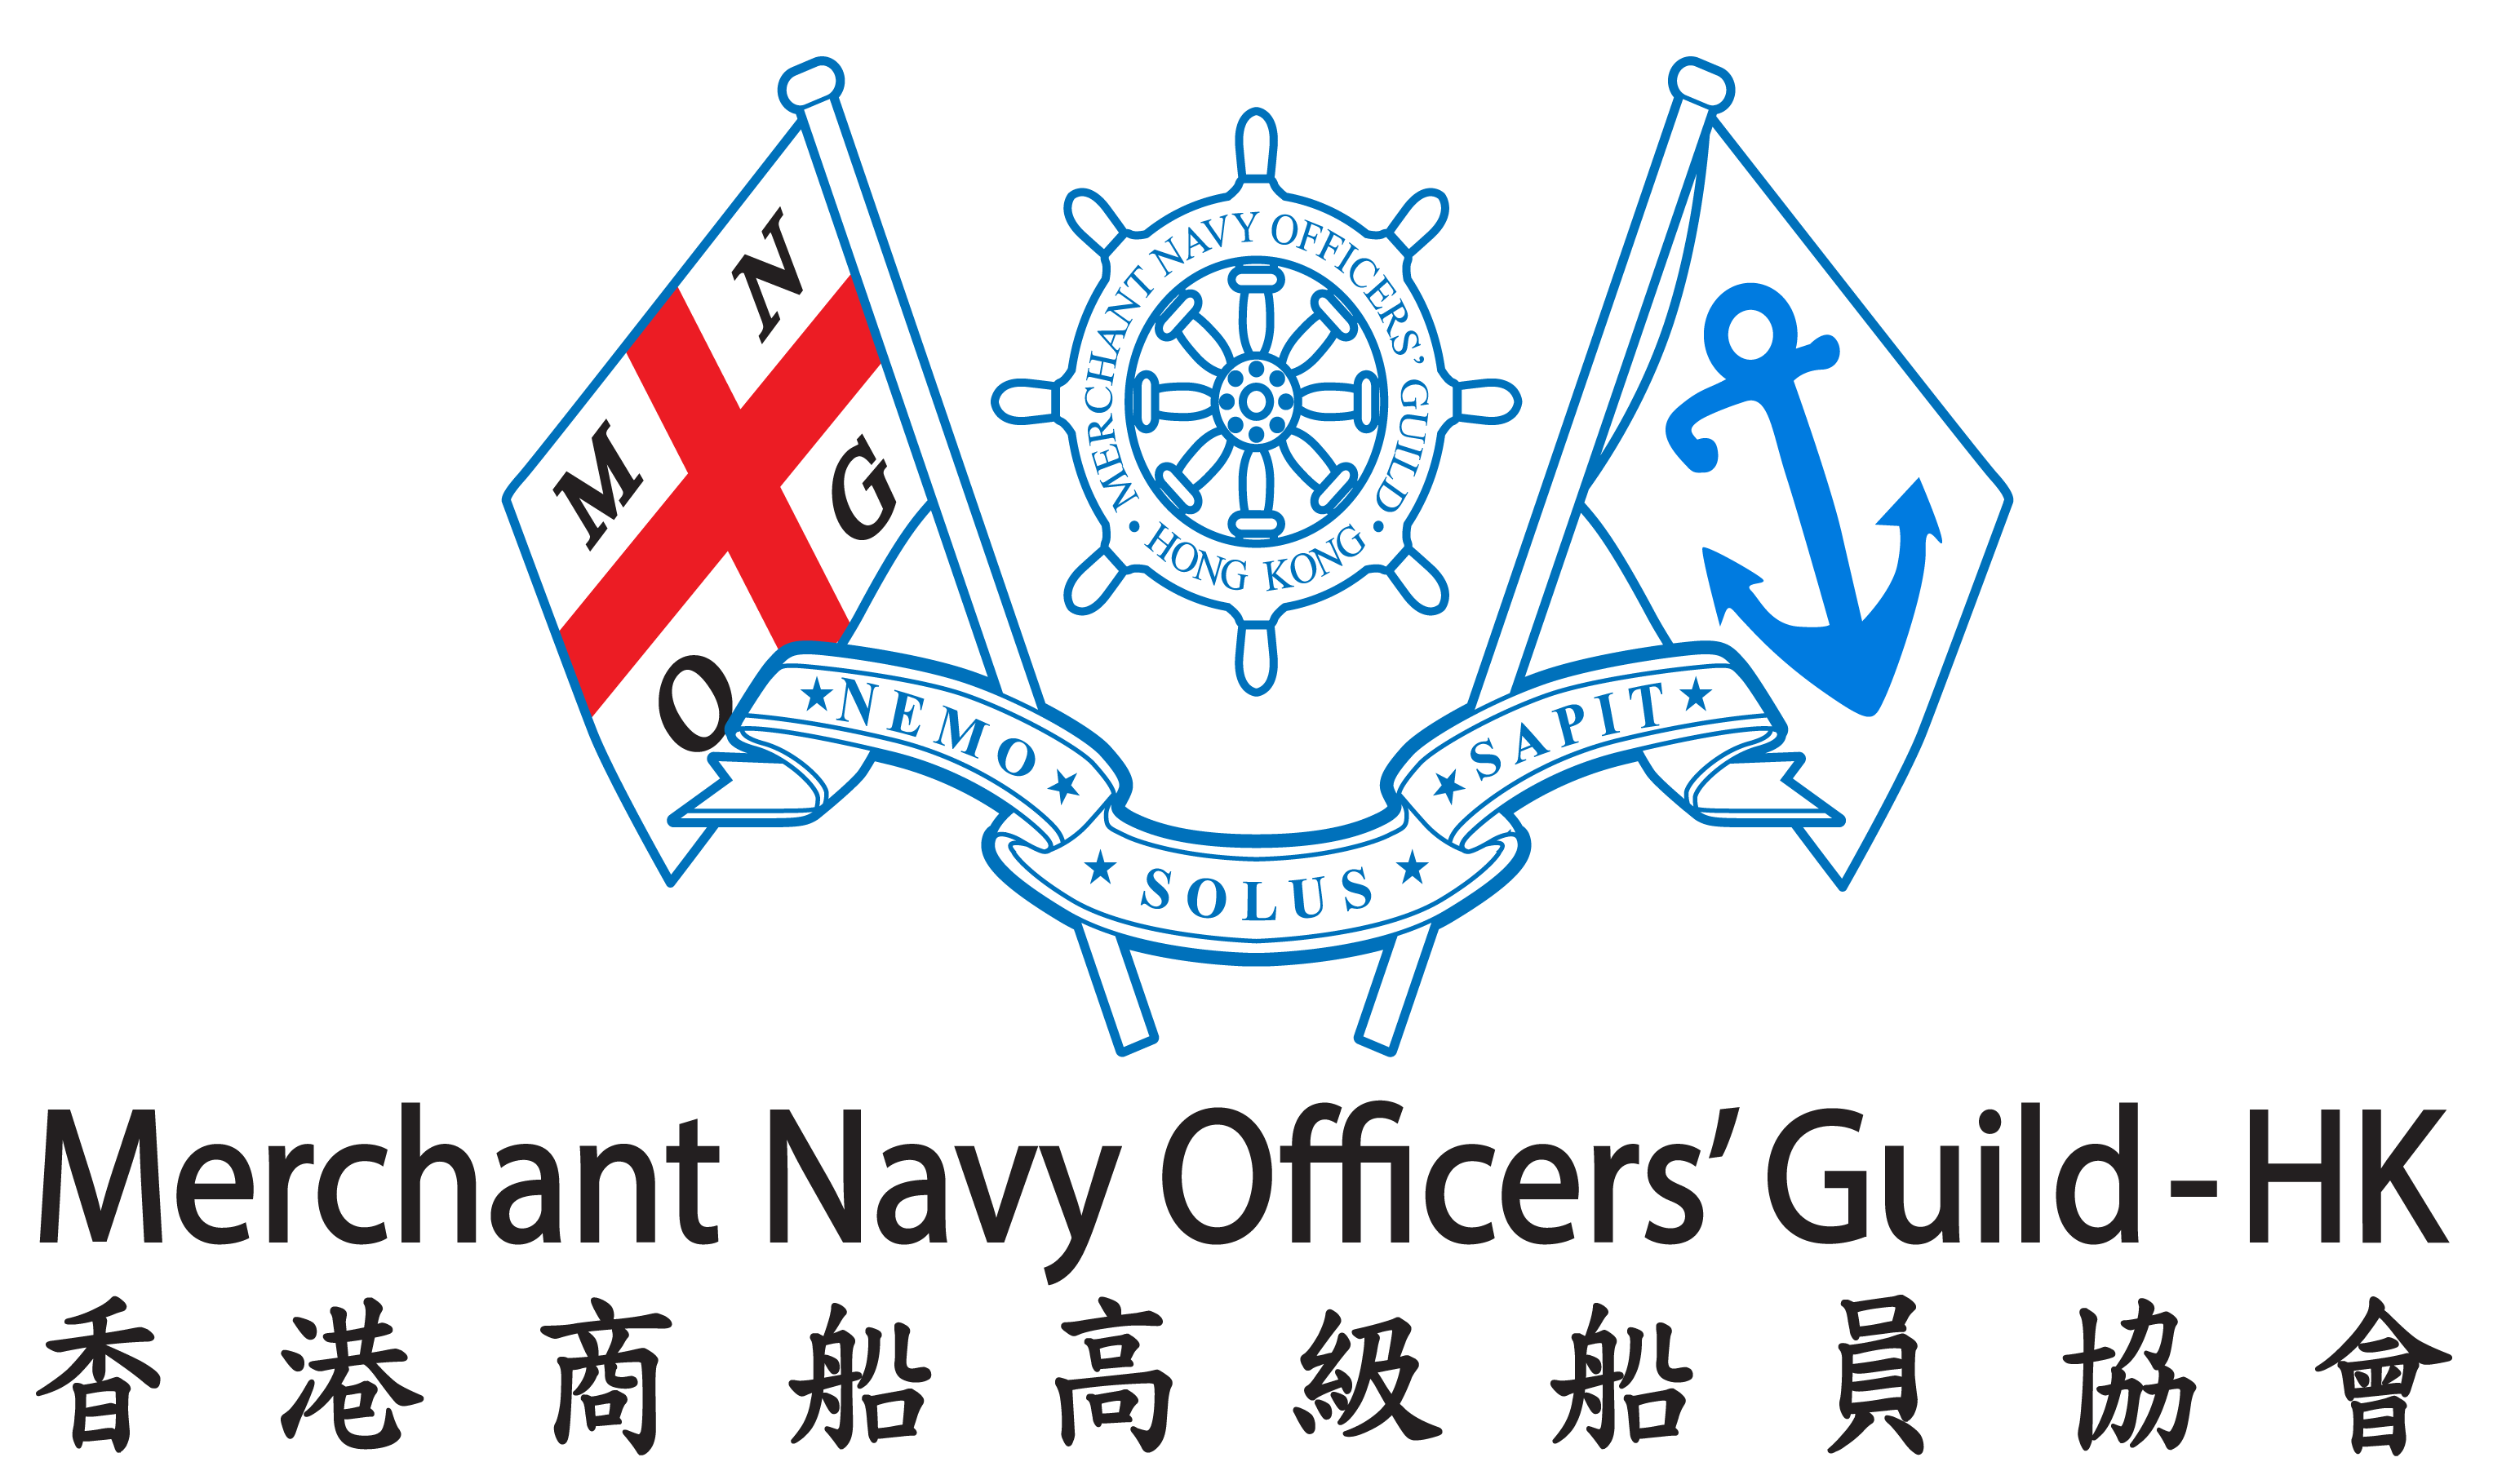 Merchant Navy Officers' Guild - Hong Kong